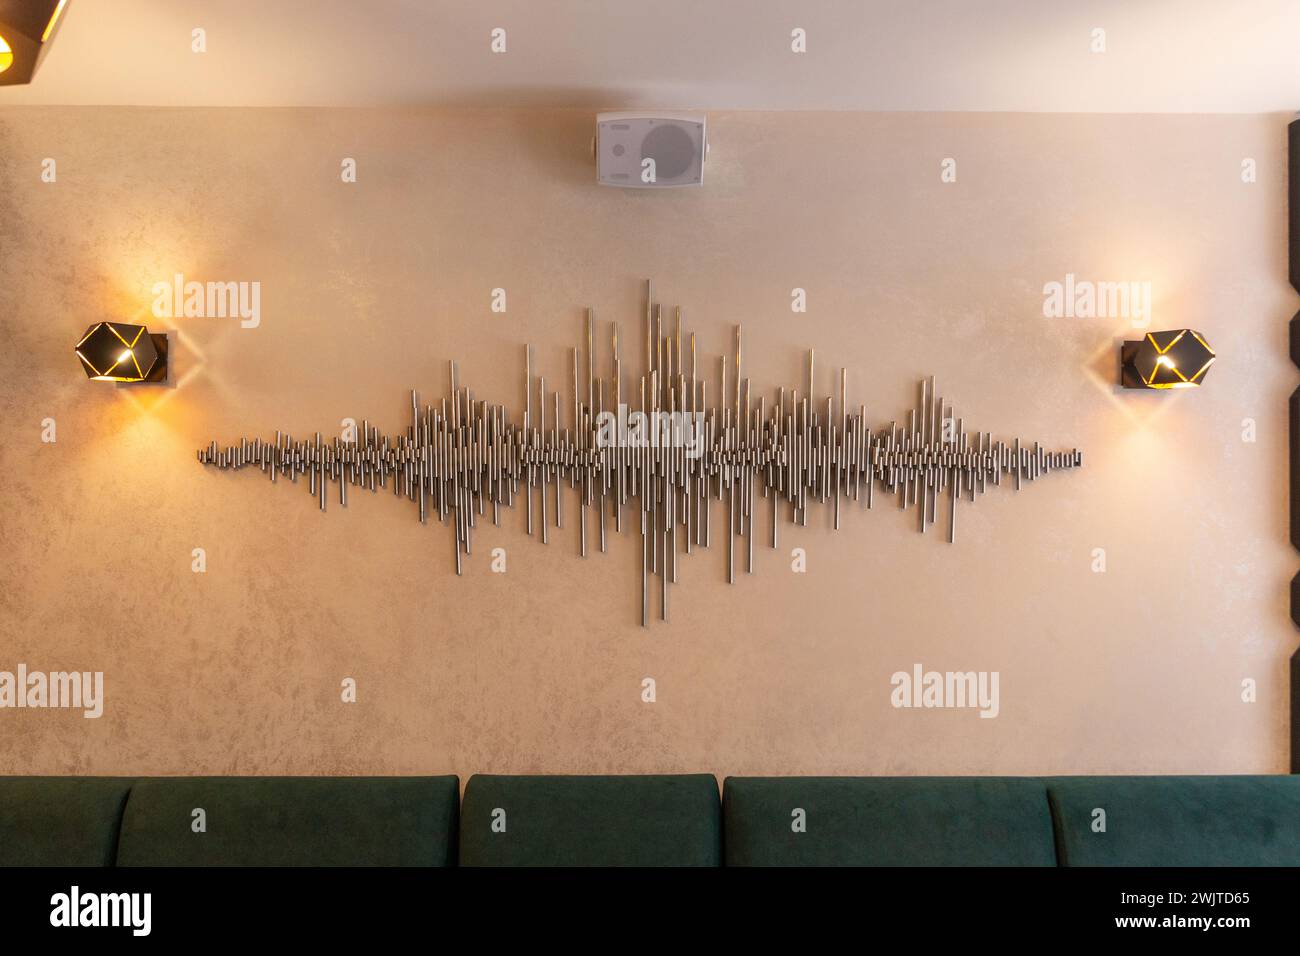 Ein dekoratives Element zur Dekoration der Wand in einem Café oder Restaurant in Form eines Audiosignals aus Metallröhren eines Audioeditors Stockfoto